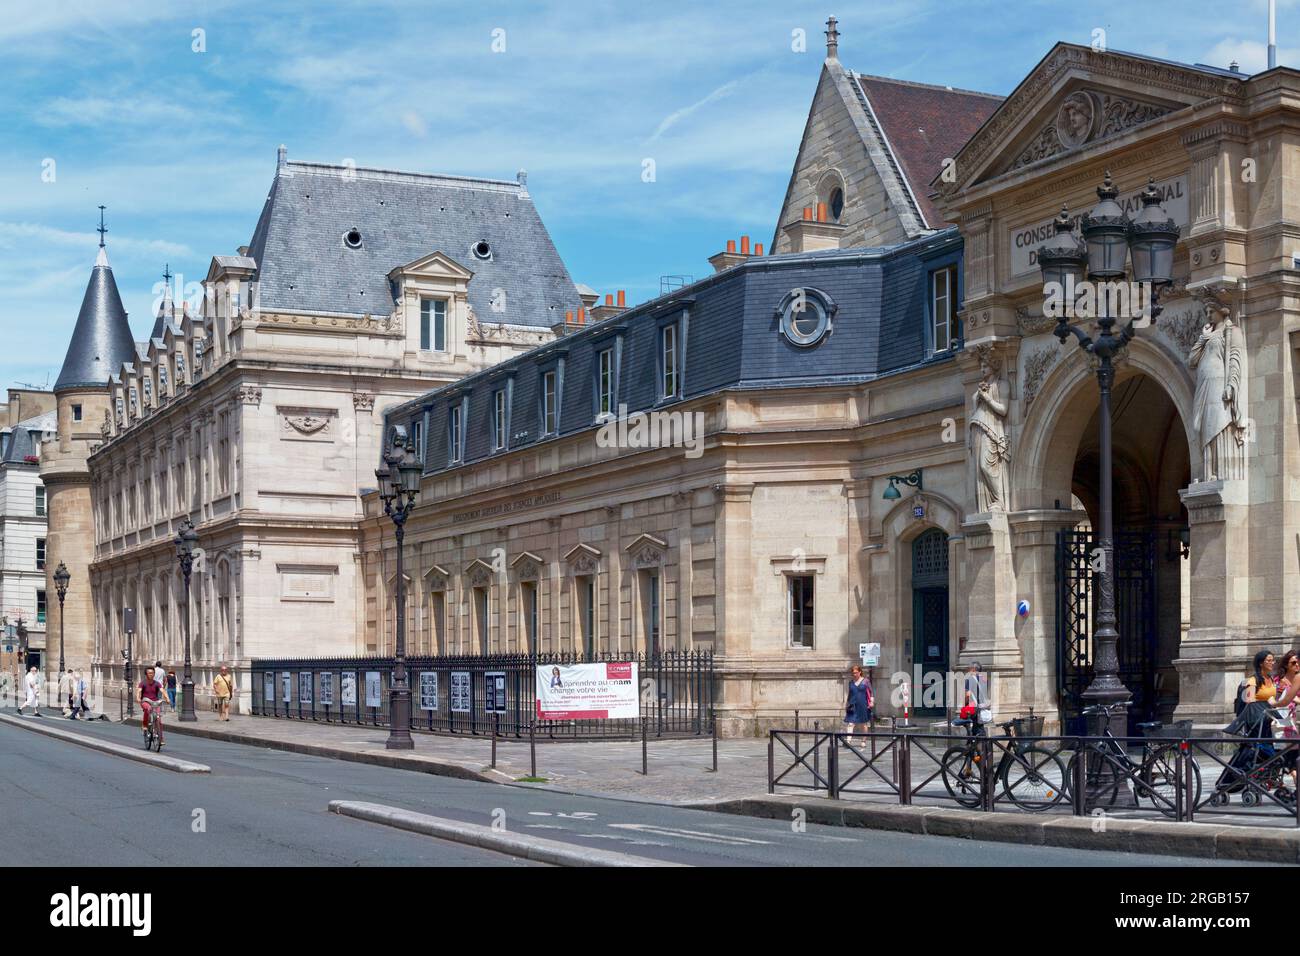 Paris, France - juillet 17 2017 : le Conservatoire national des arts et métiers (CNAM ; Conservatoire national des arts et métiers) est un doctorat-GRA Banque D'Images